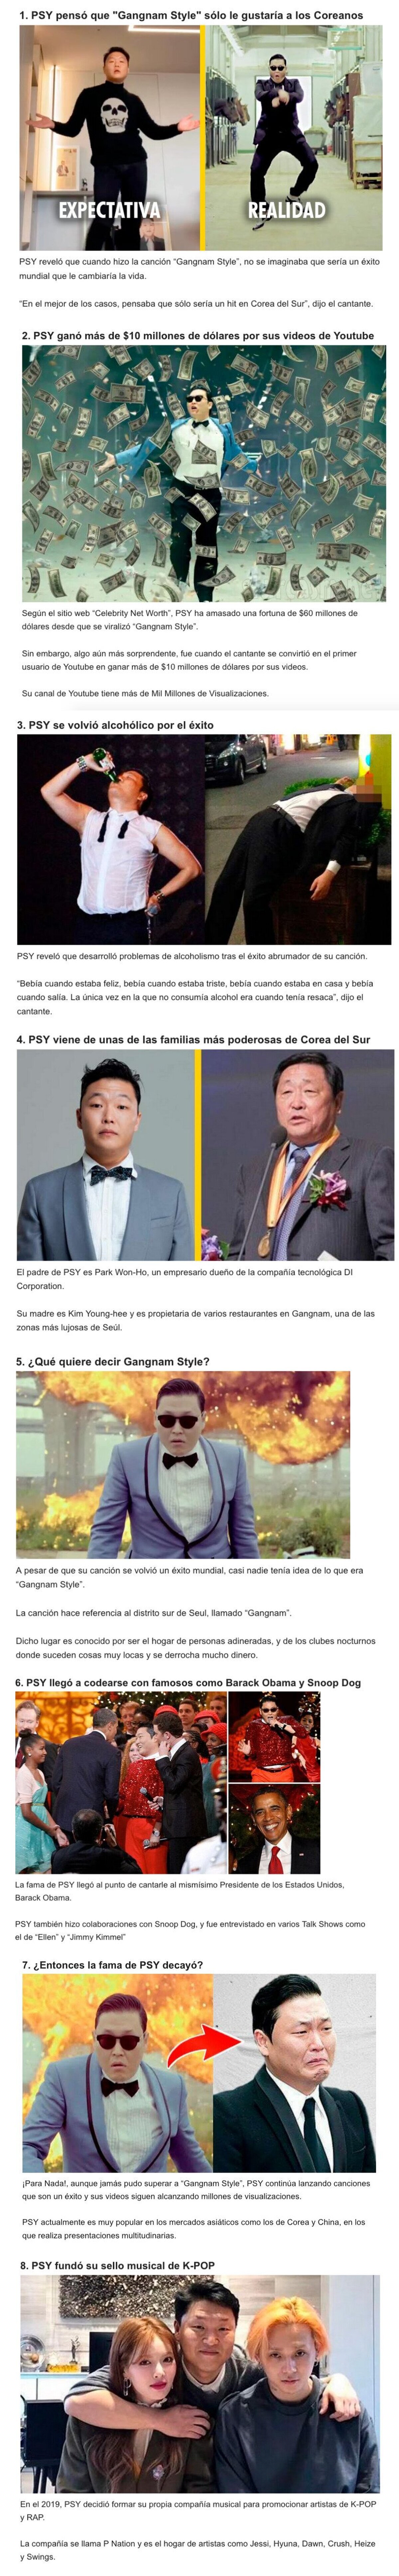 GALERÍA: 8 Cosas que pasaron con “PSY” luego de su éxito con el “Gangnam Style”